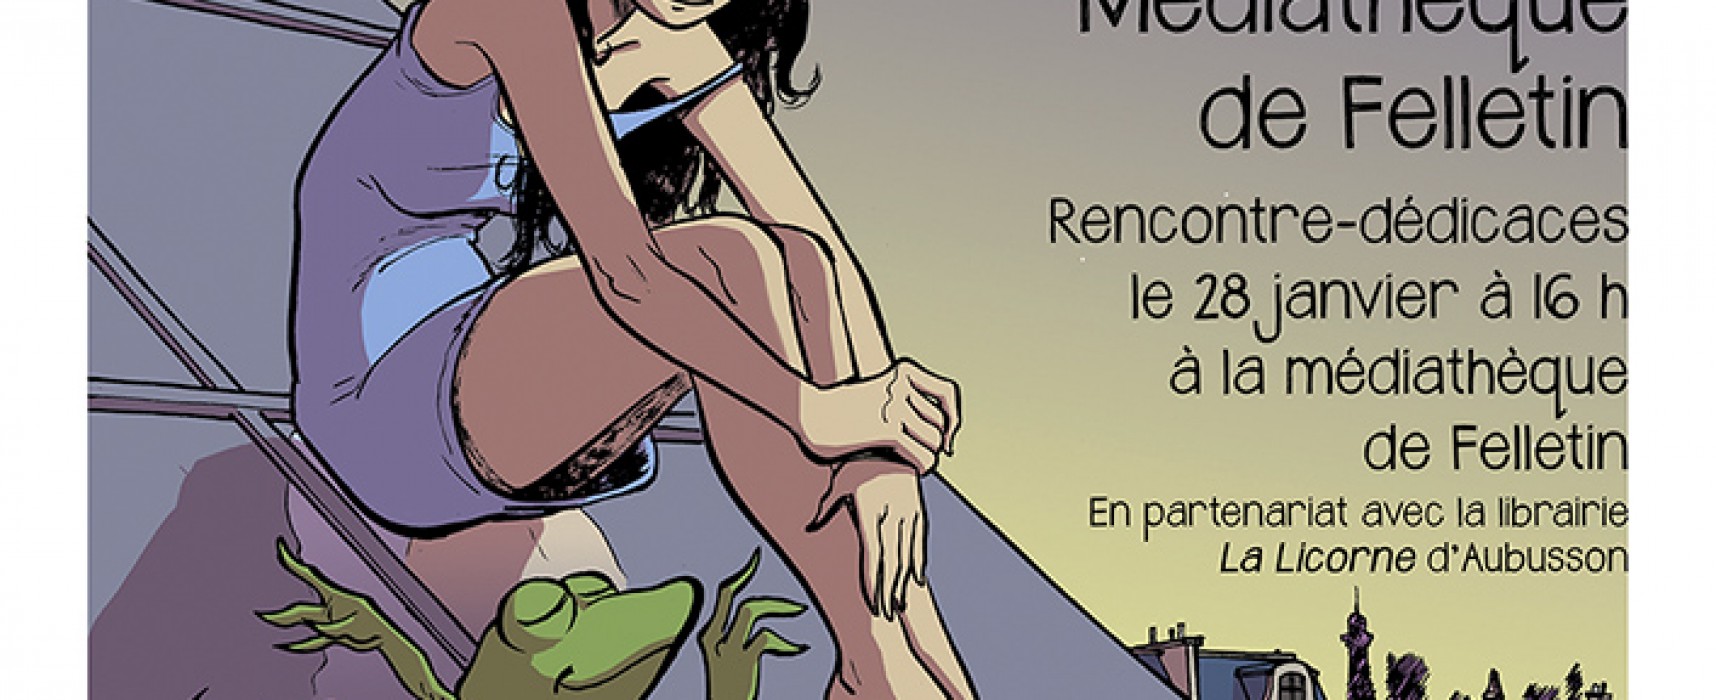 François Duprat, Exposition d’originaux de bande dessinée du 7 janvier au 7 février 2015